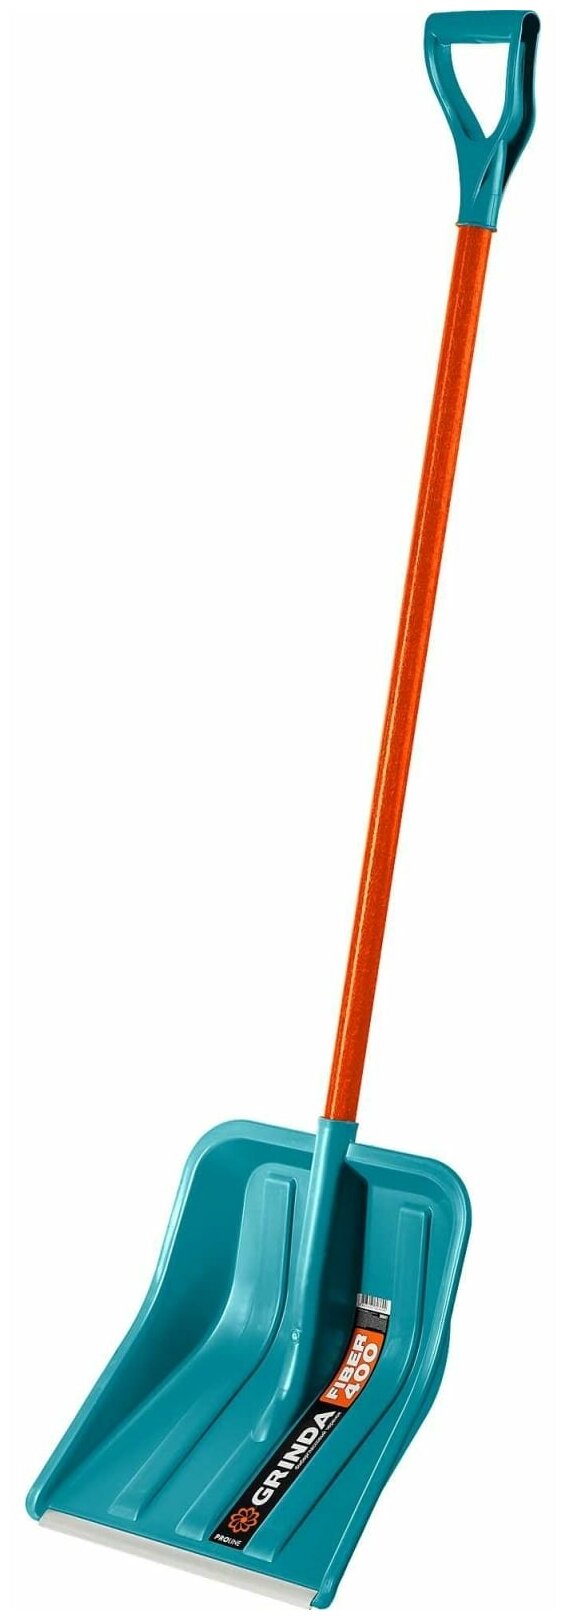 Снеговая лопата PROLine FIBER-400 400 мм пластиковая с алюминиевой планкой, особопрочный легкий черенок из фибергласса, V-ручка GRINDA 39941